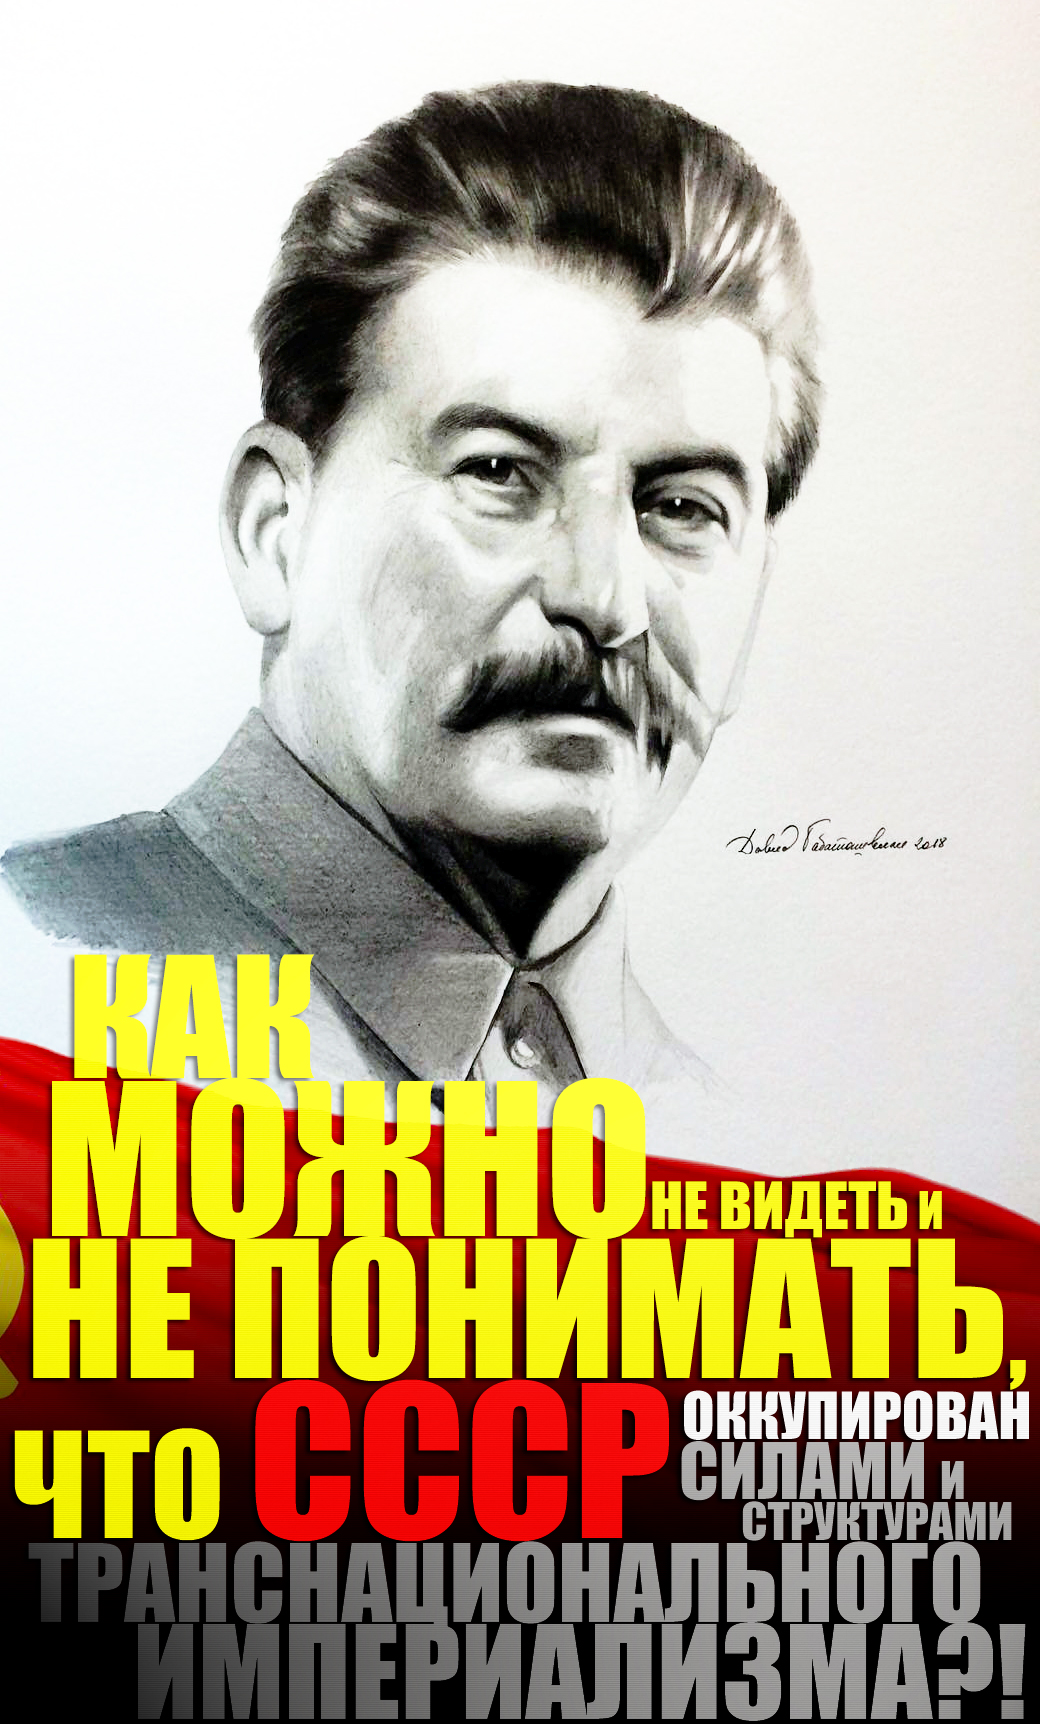 Х большевик. Партия Сталина.